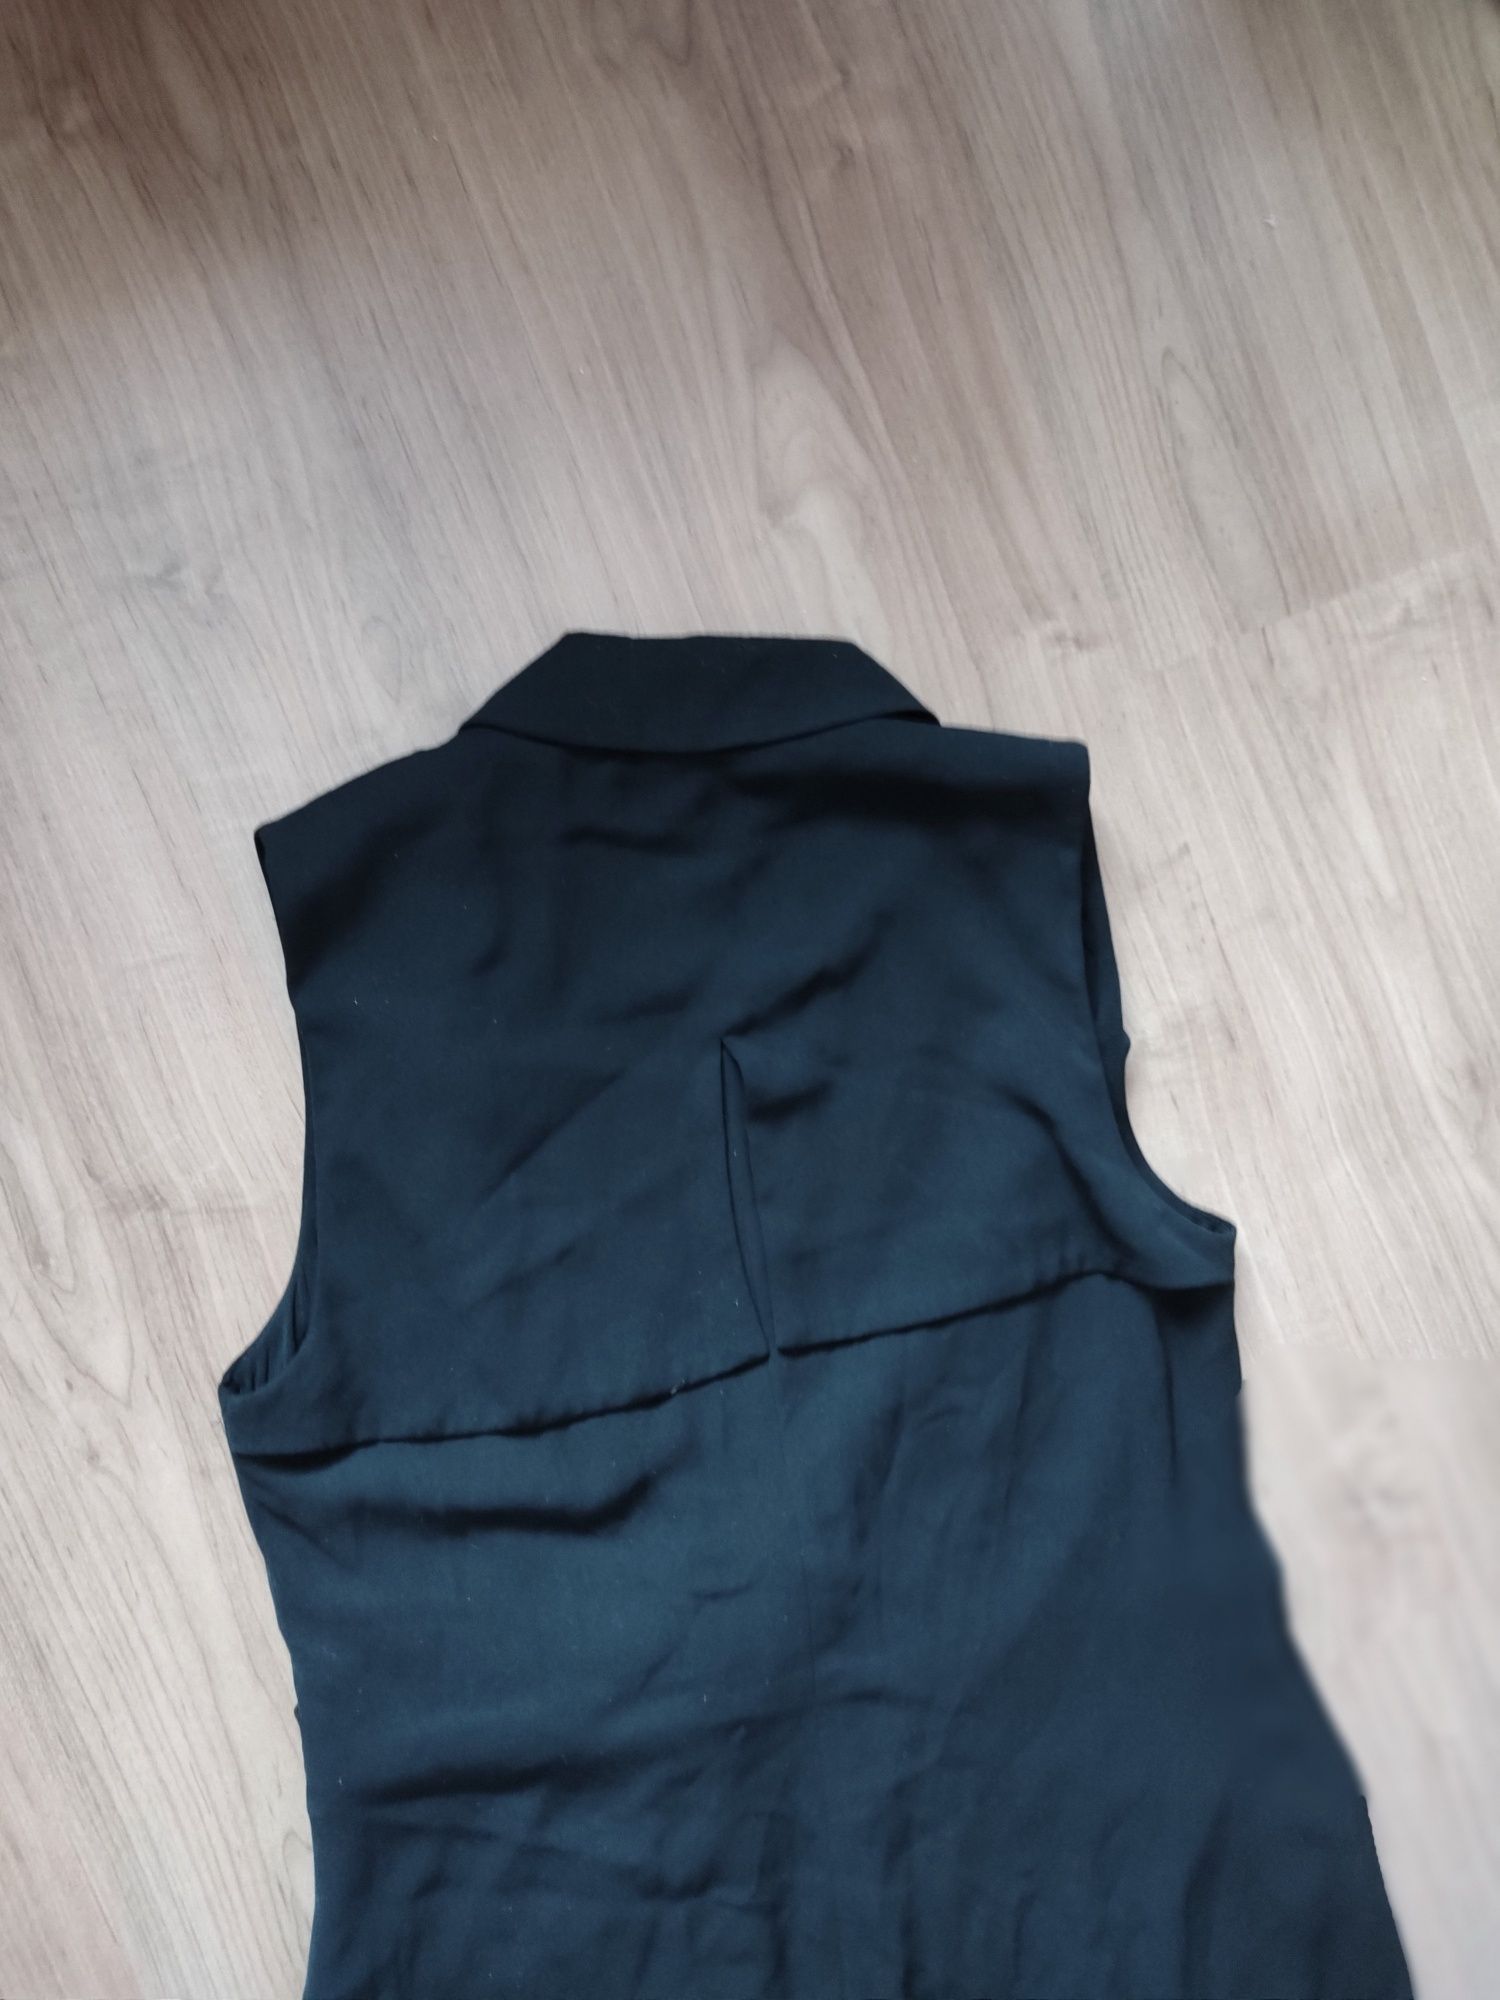 Czarna sukienka elegancka jak marynarka MIDI Top Secret 38 M 40 L